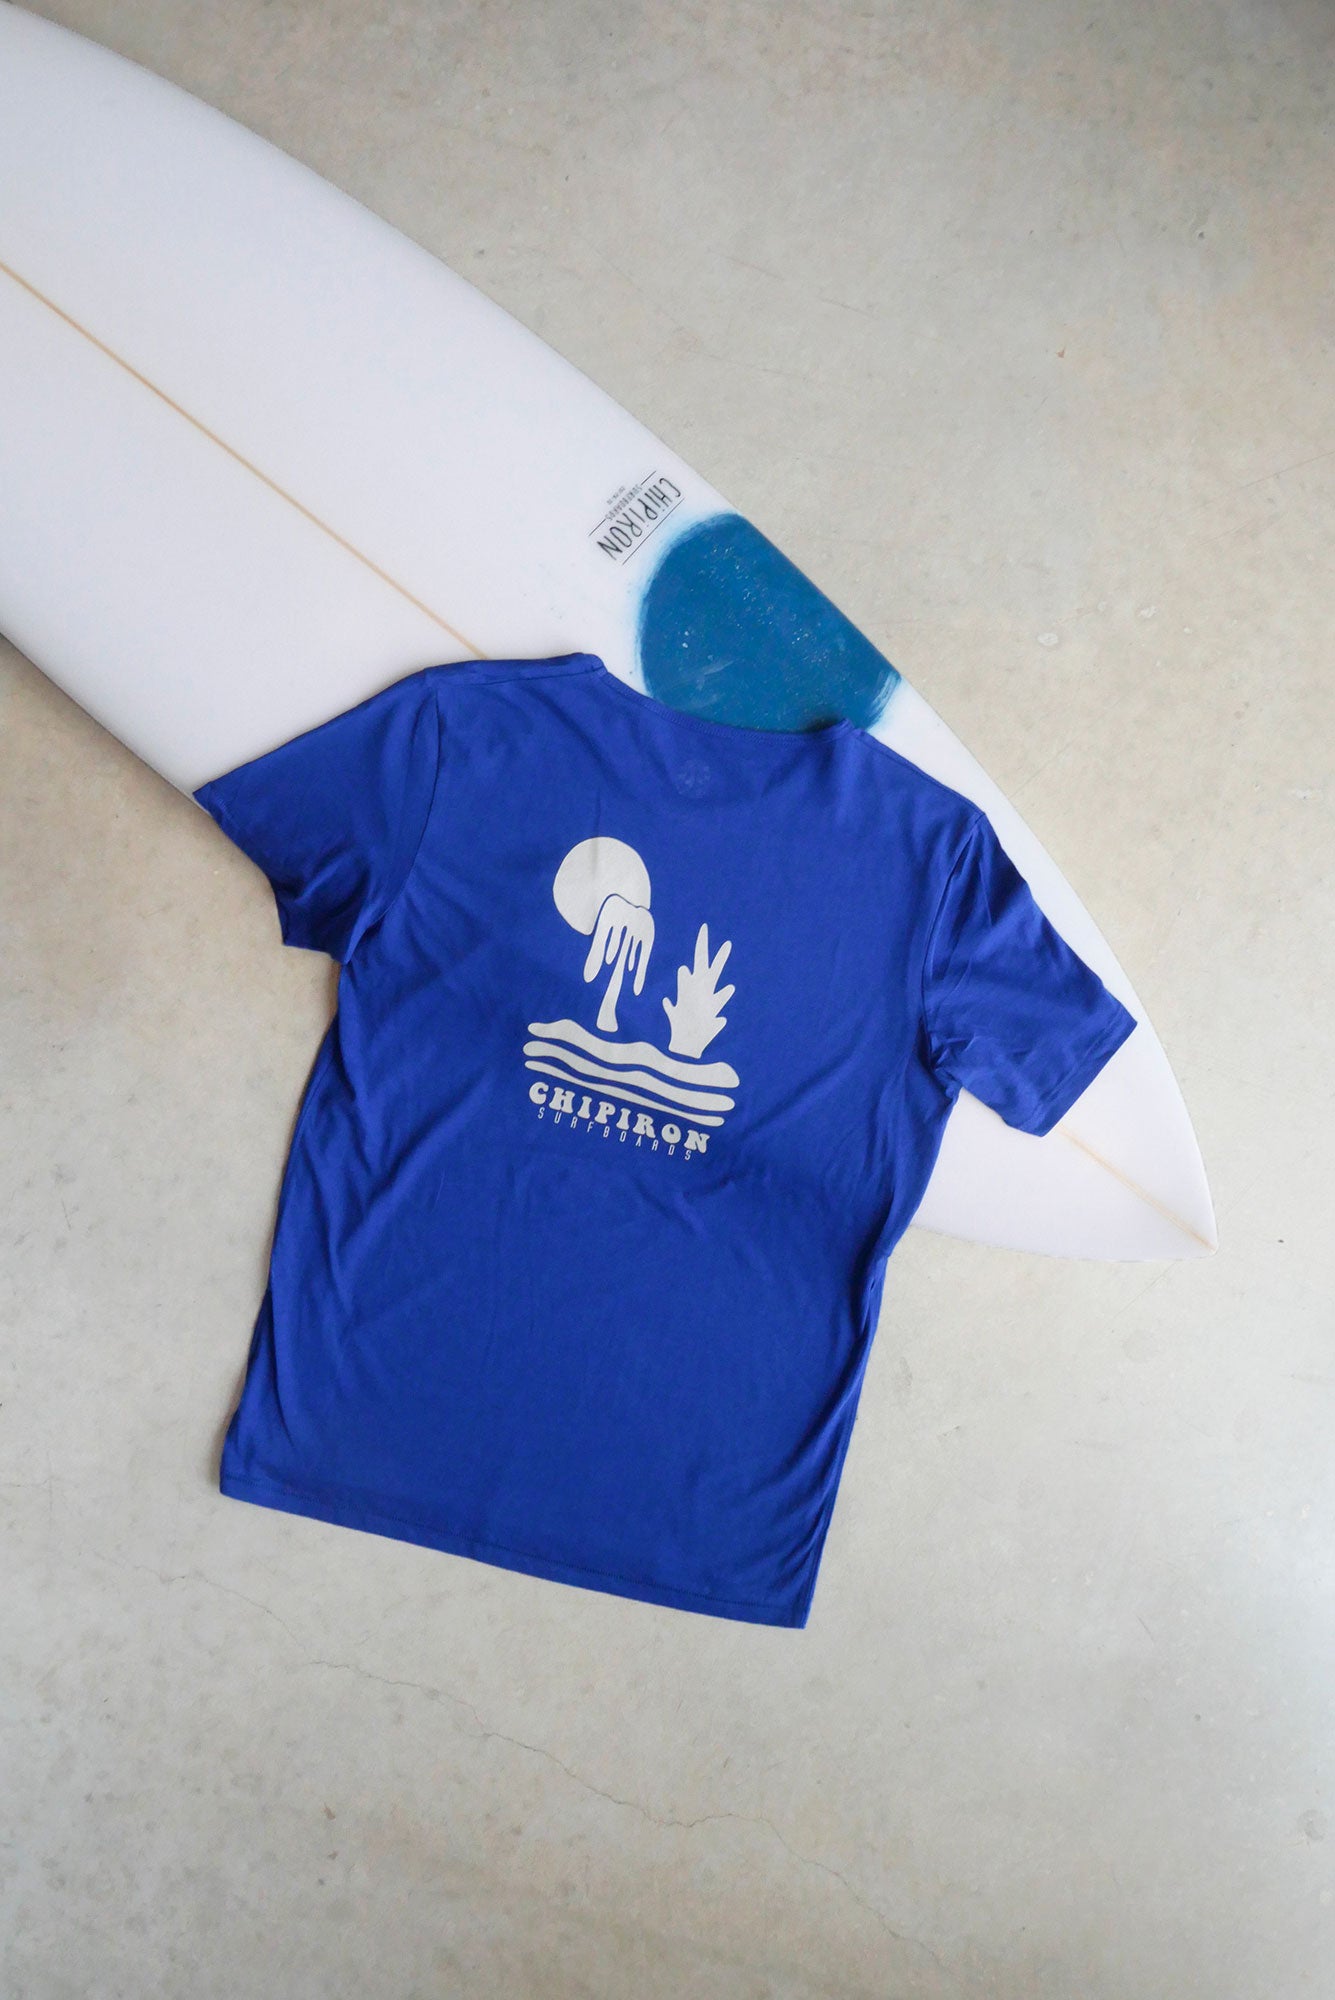 melted-bleu-t-shirt-dos-chipiron-surfboards-hossegor